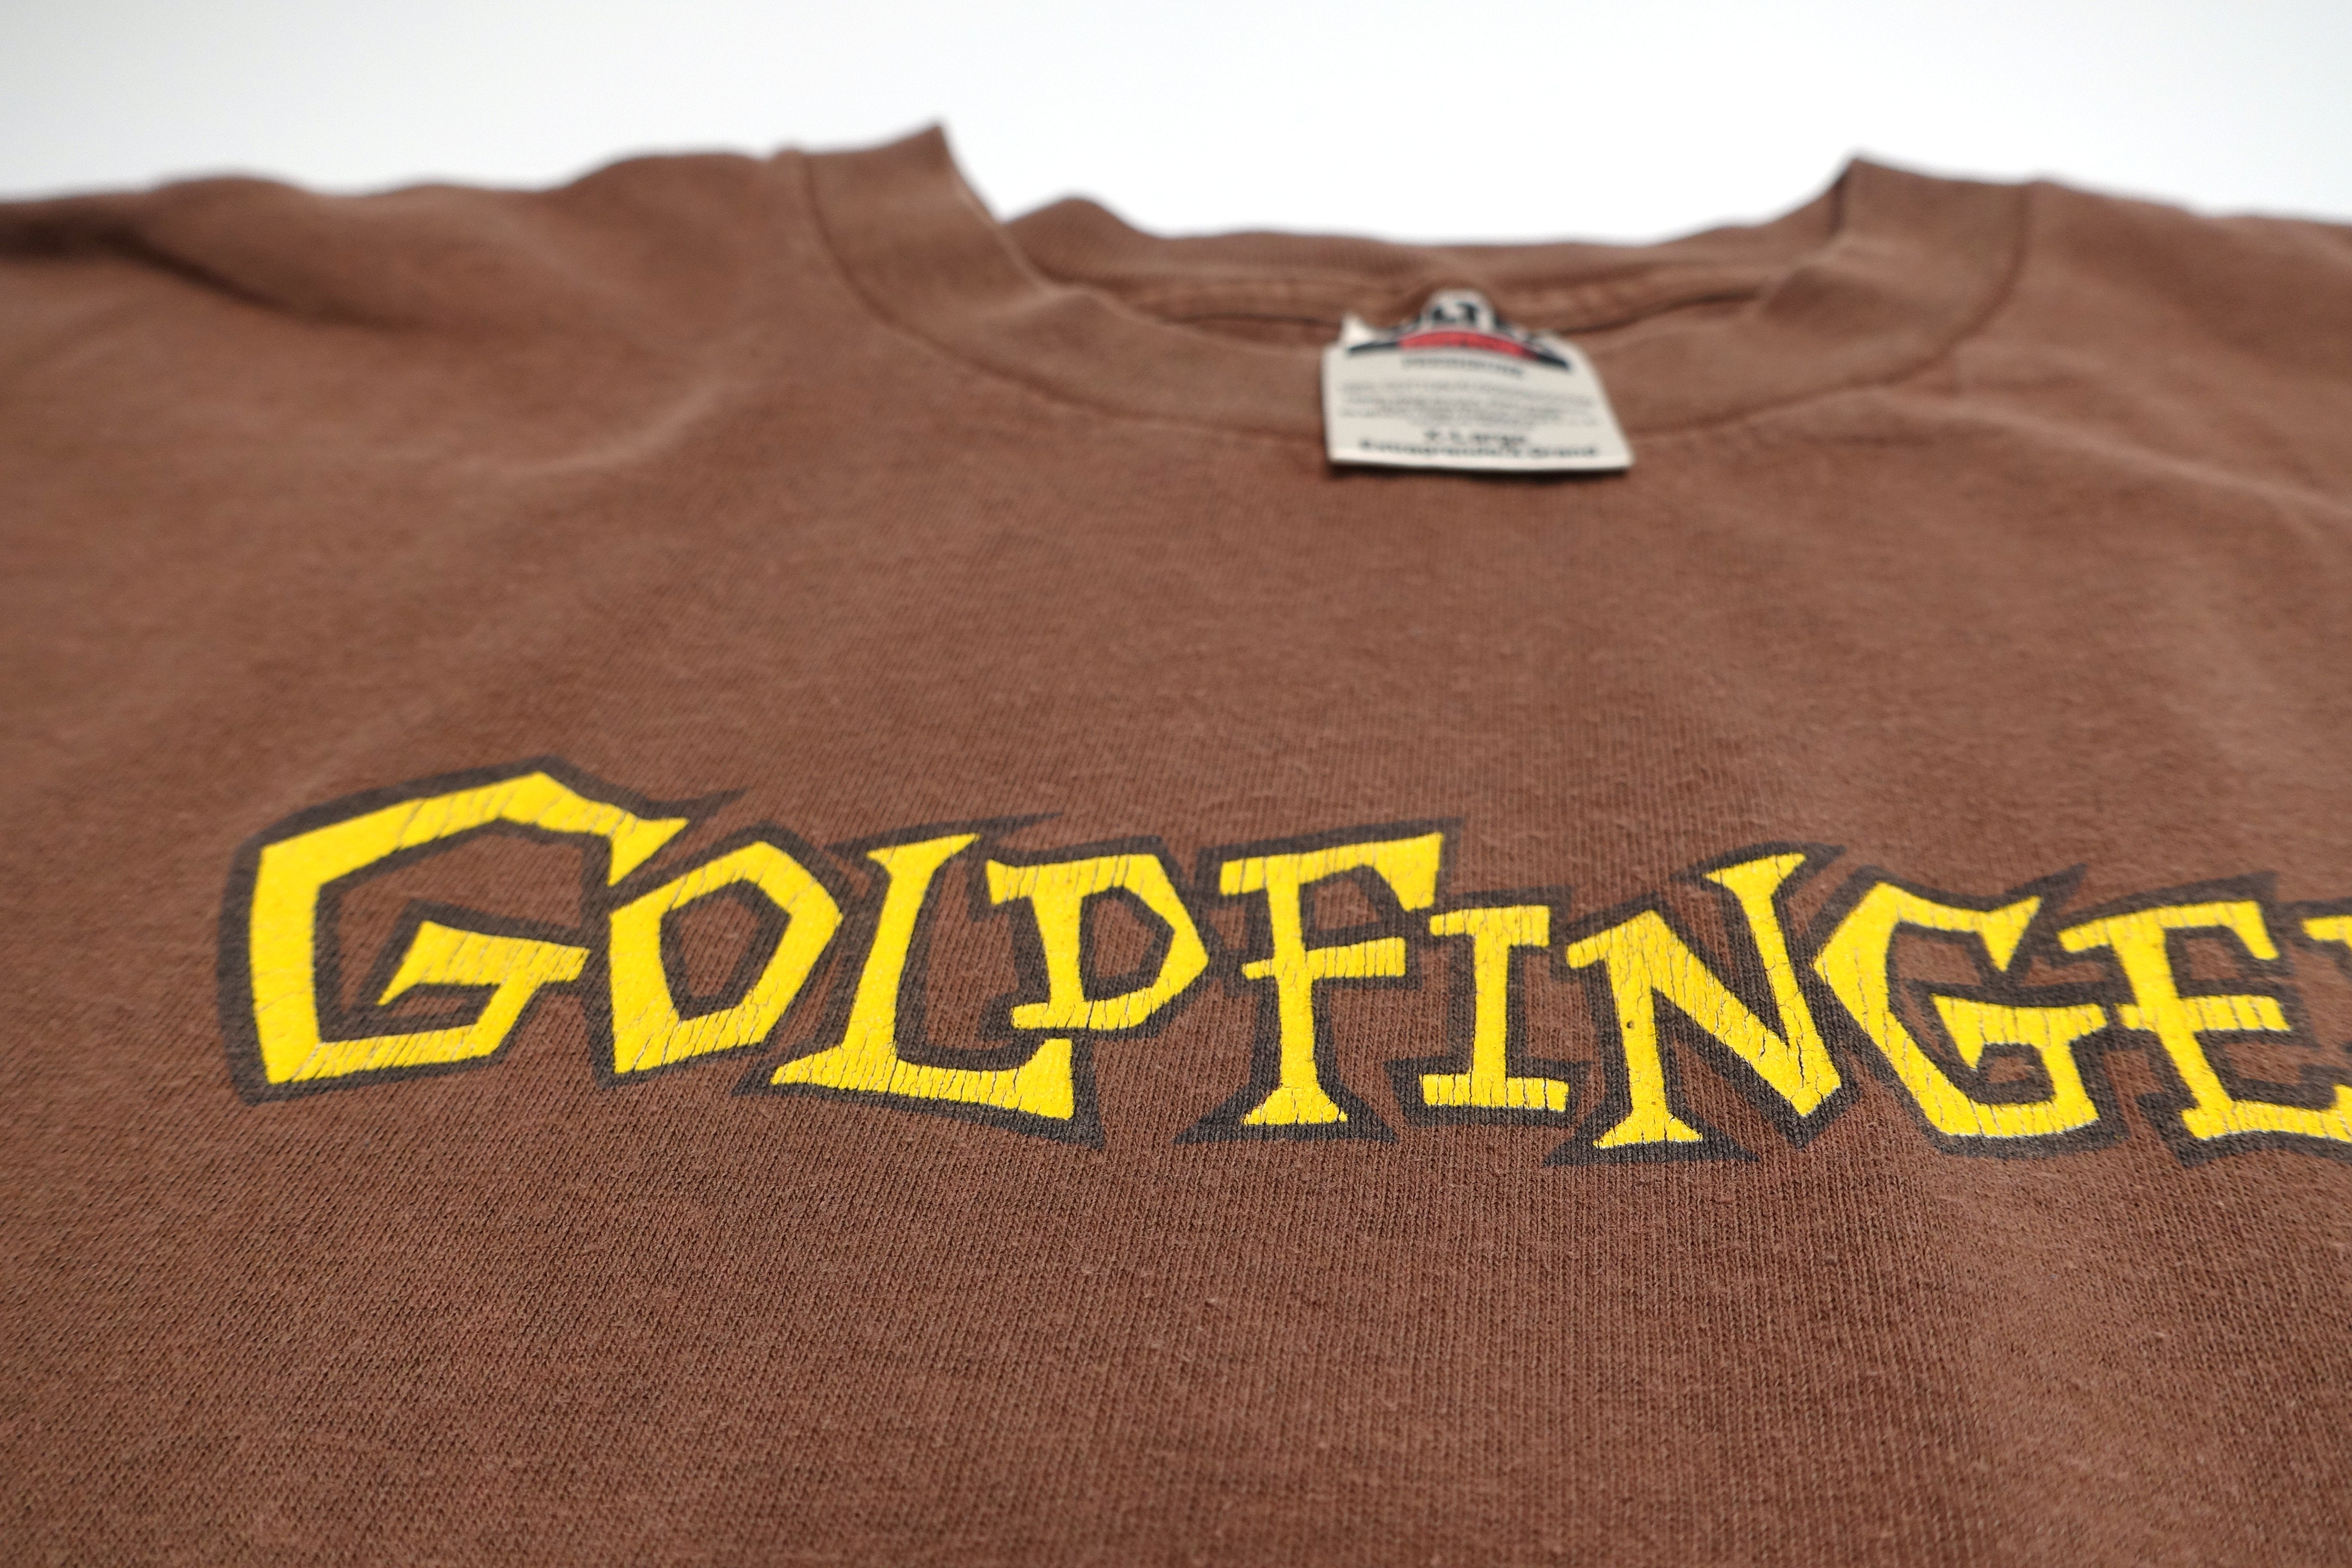 Goldfinger - S/T 1996 Tour Shirt (Brown) Size XL